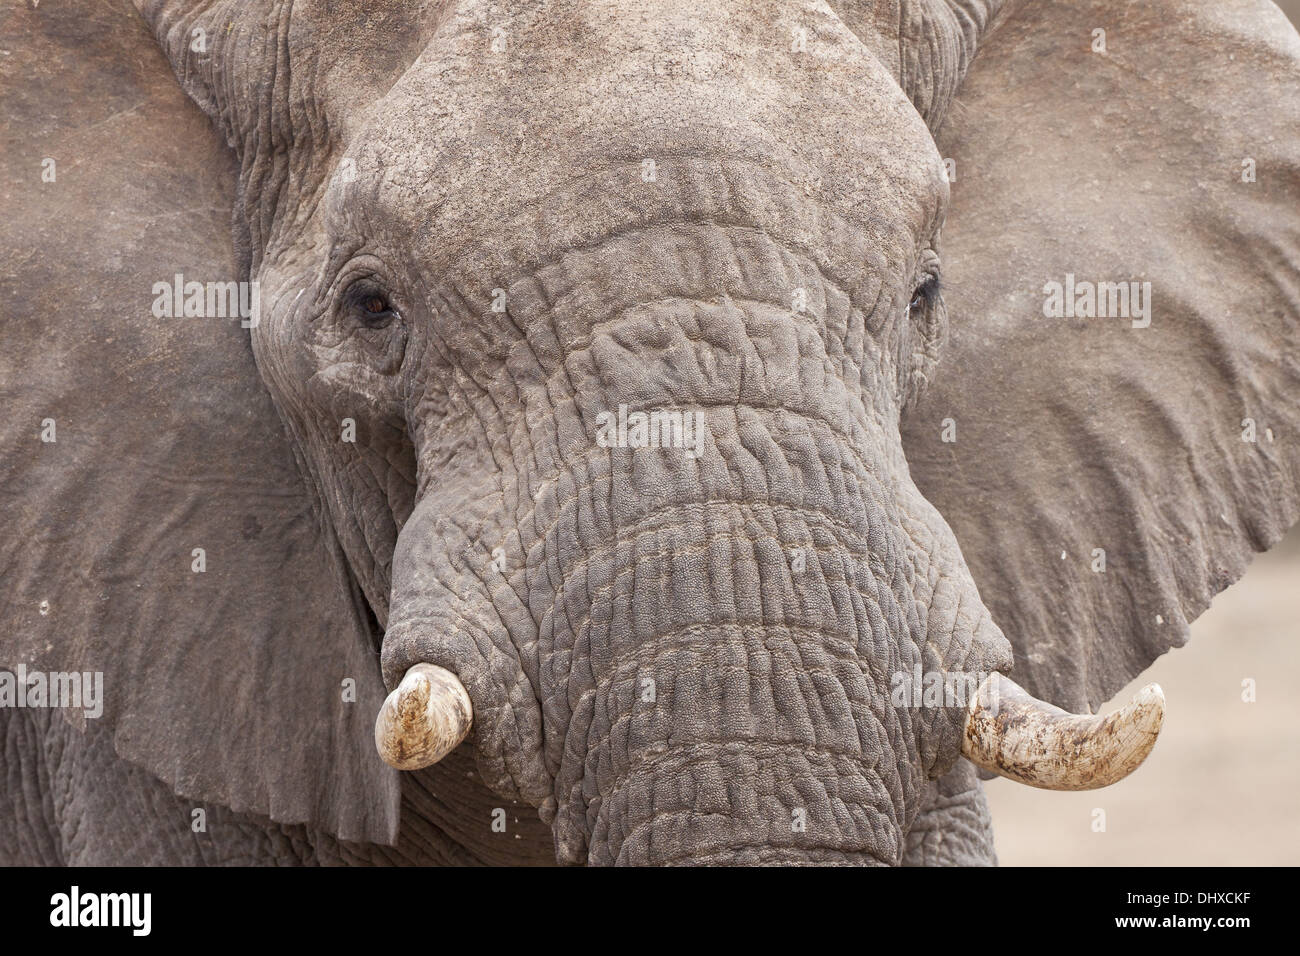 Portraet of the elephant Stock Photo